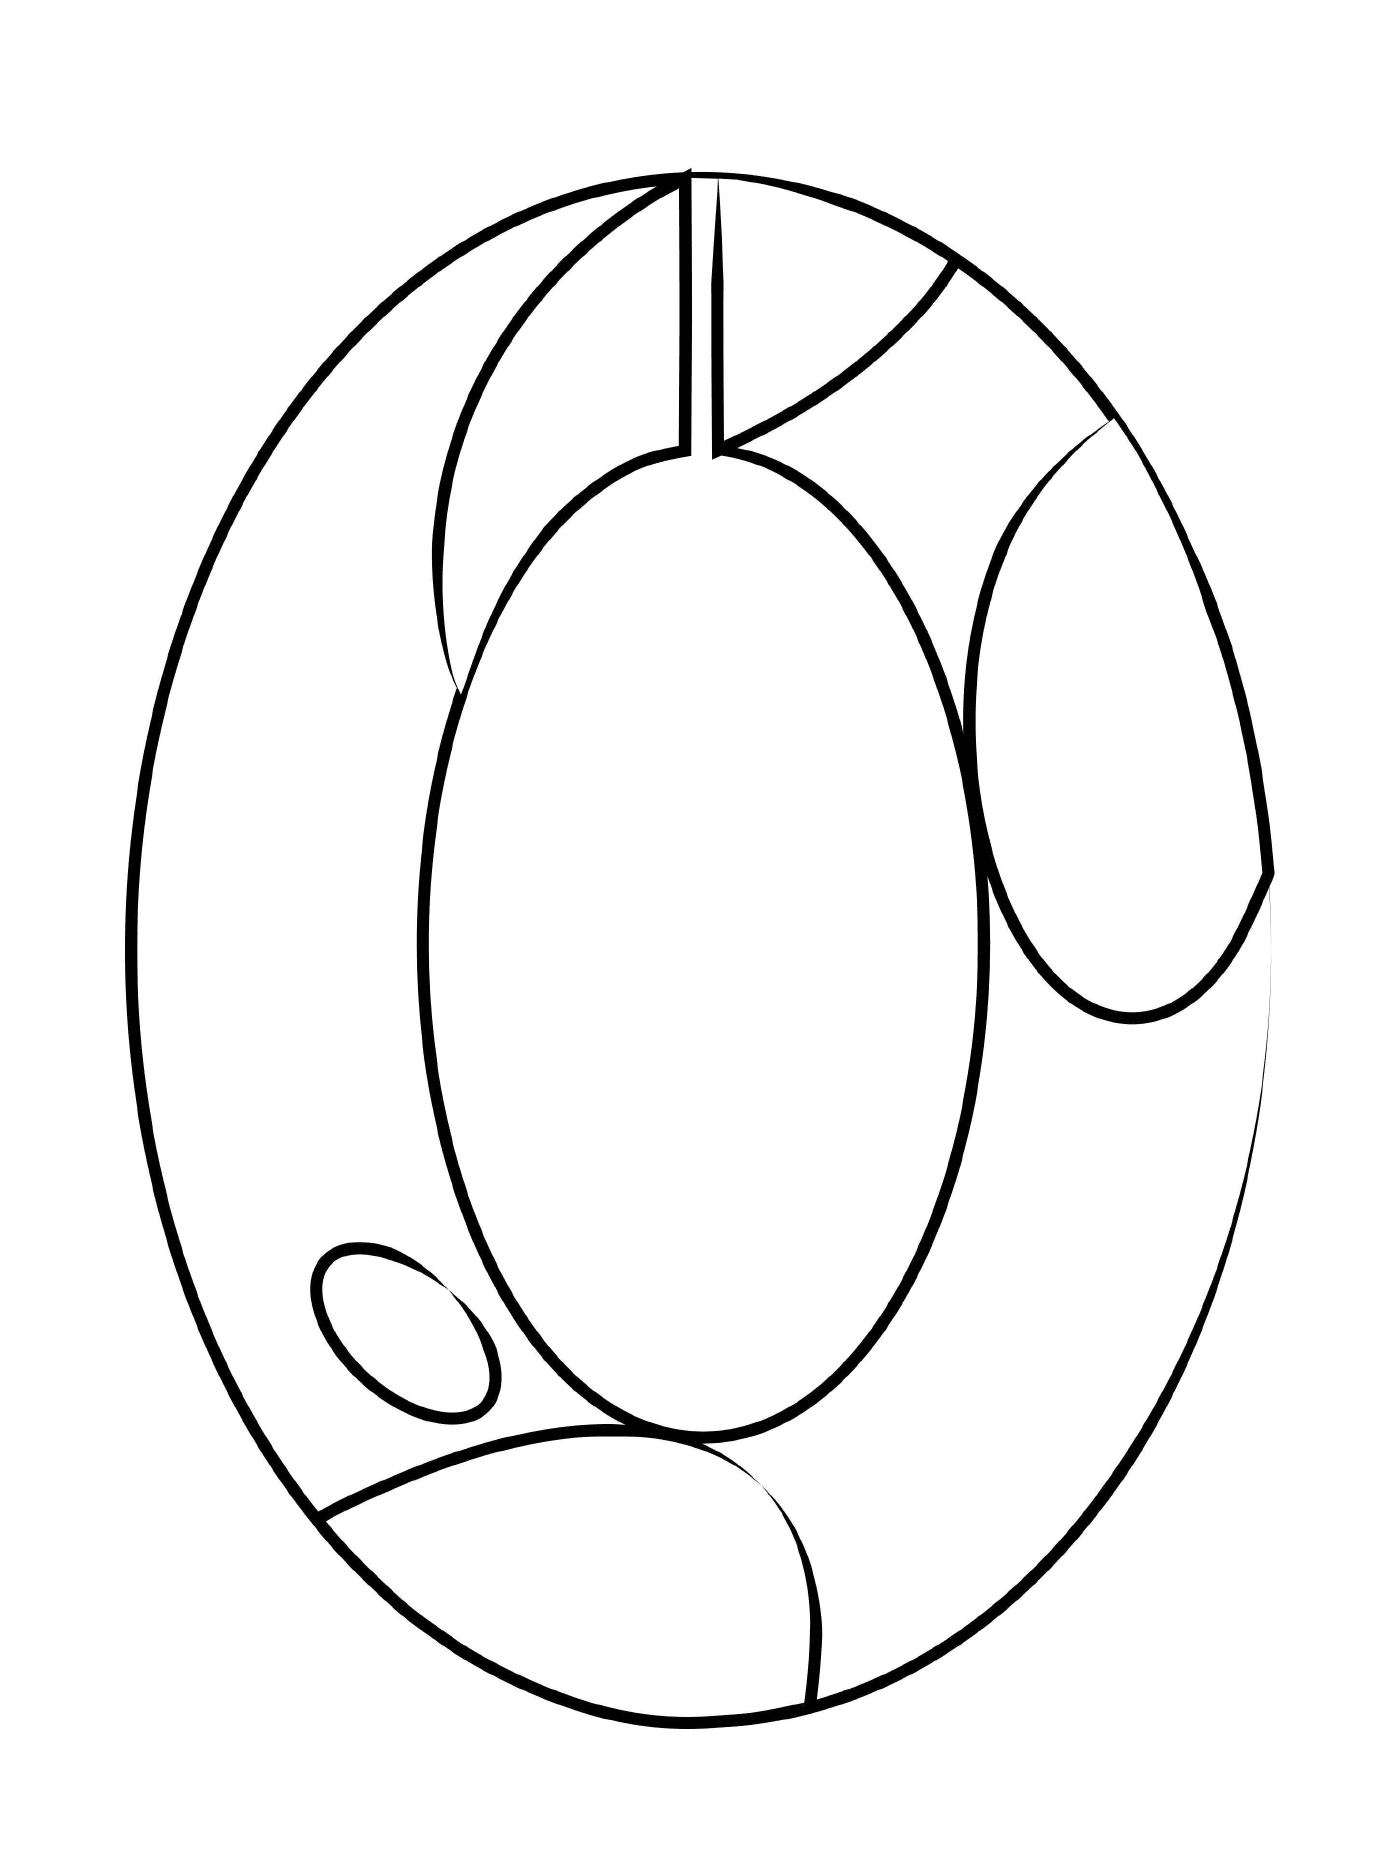  Zero figure with apple outline 